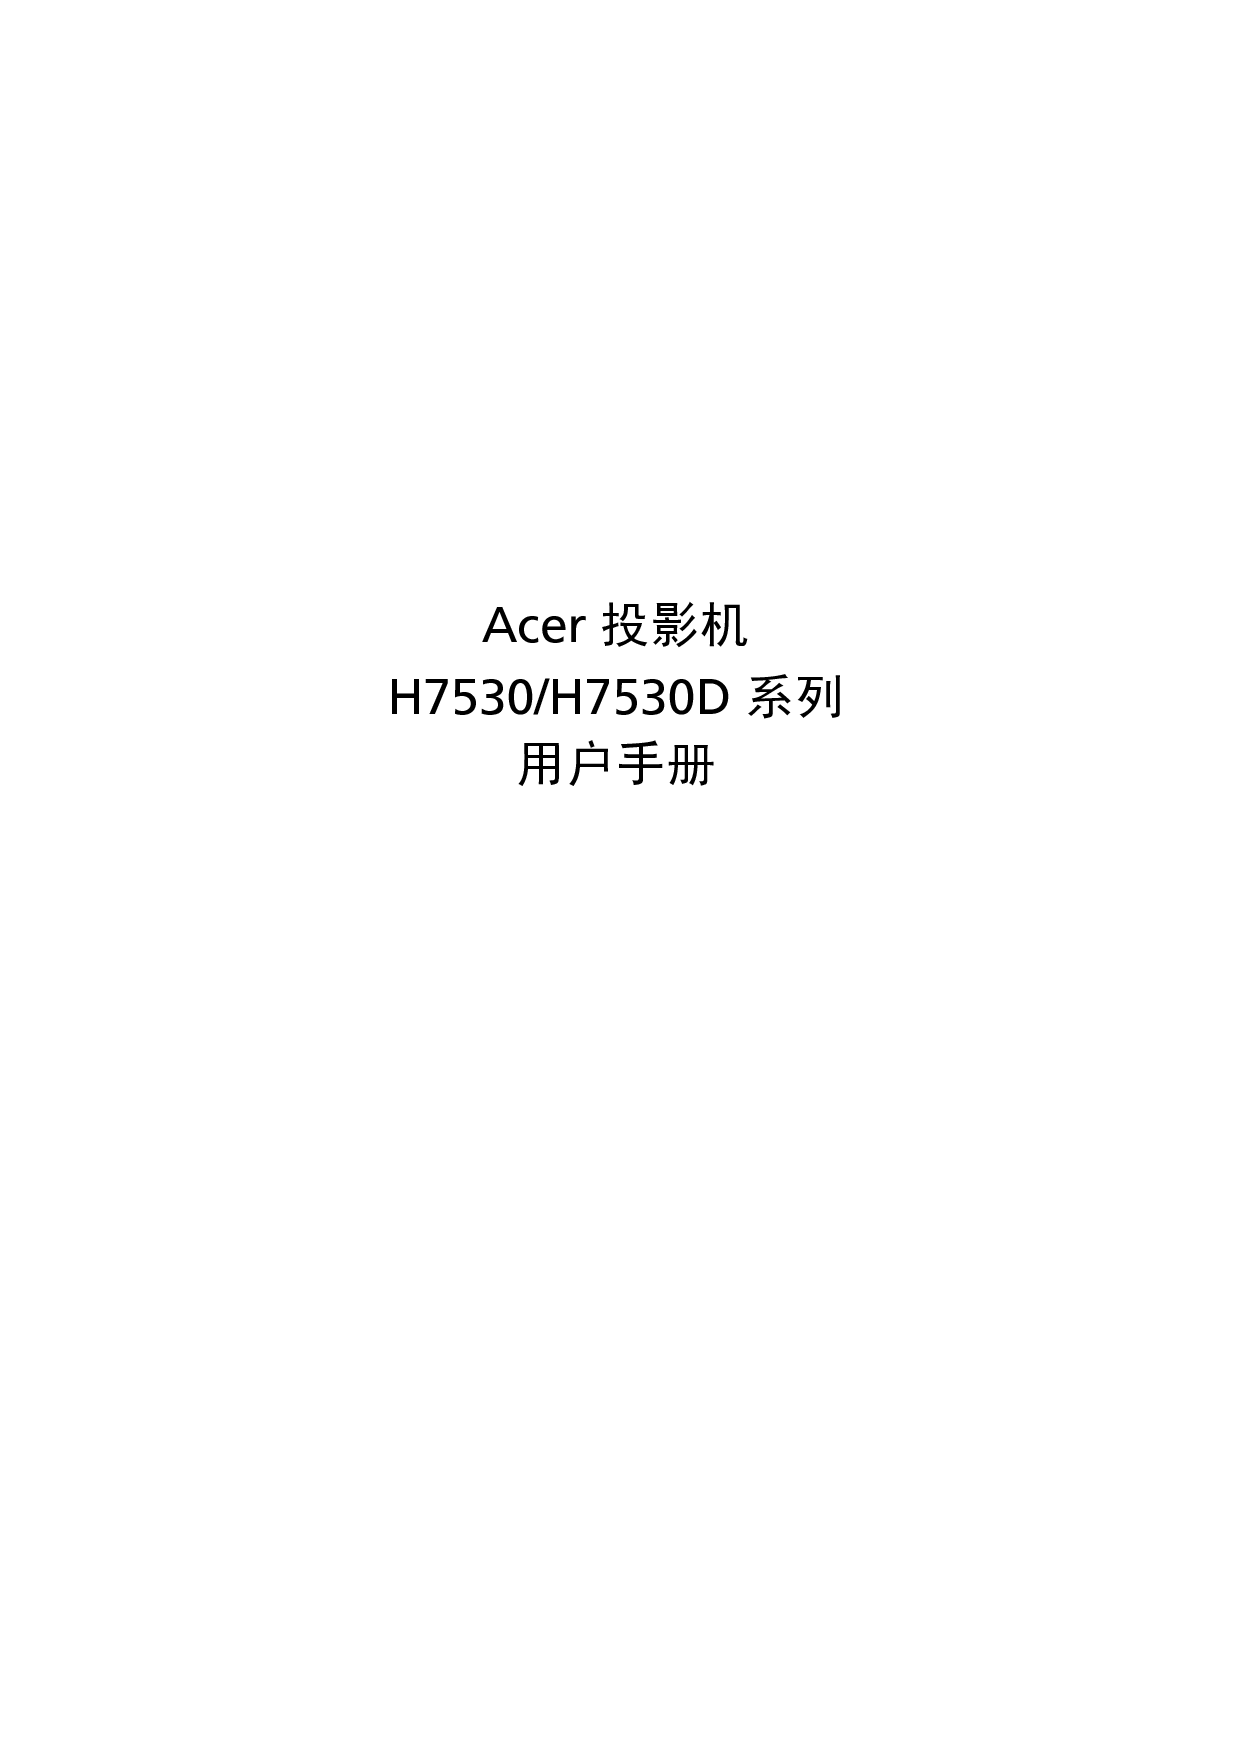 宏基 Acer H7530 用户指南 封面